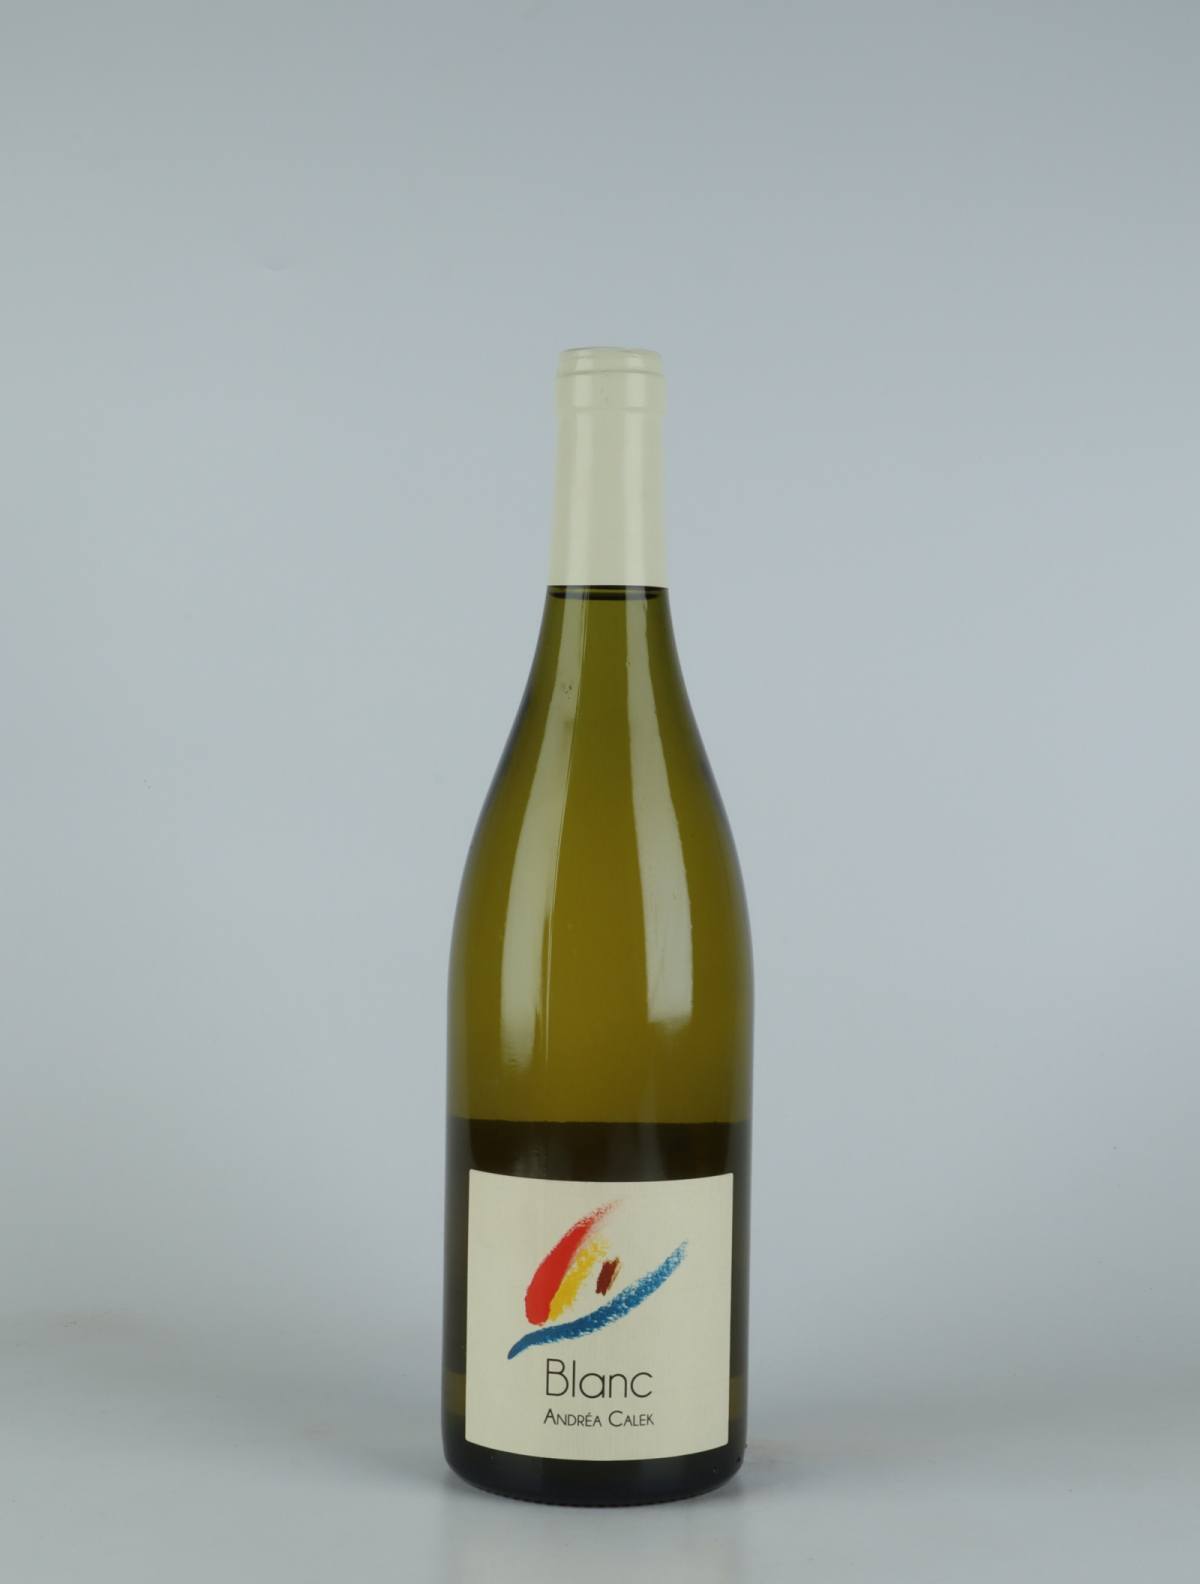 En flaske 2019 Blanc Hvidvin fra Andrea Calek, Ardèche i Frankrig